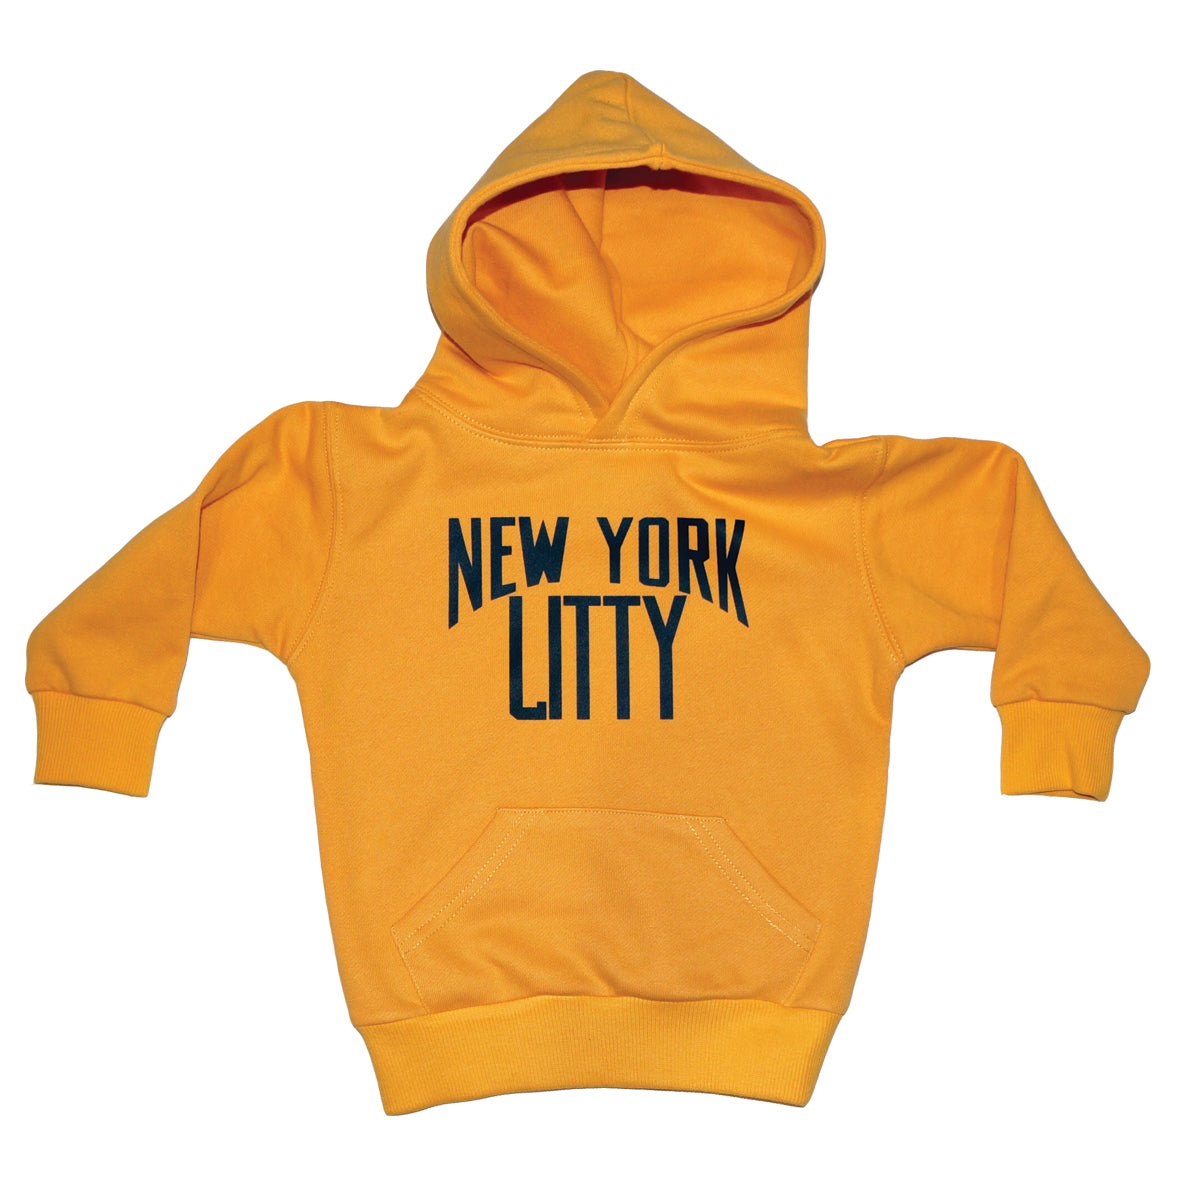 New York Litty Hoodie (Mustard)